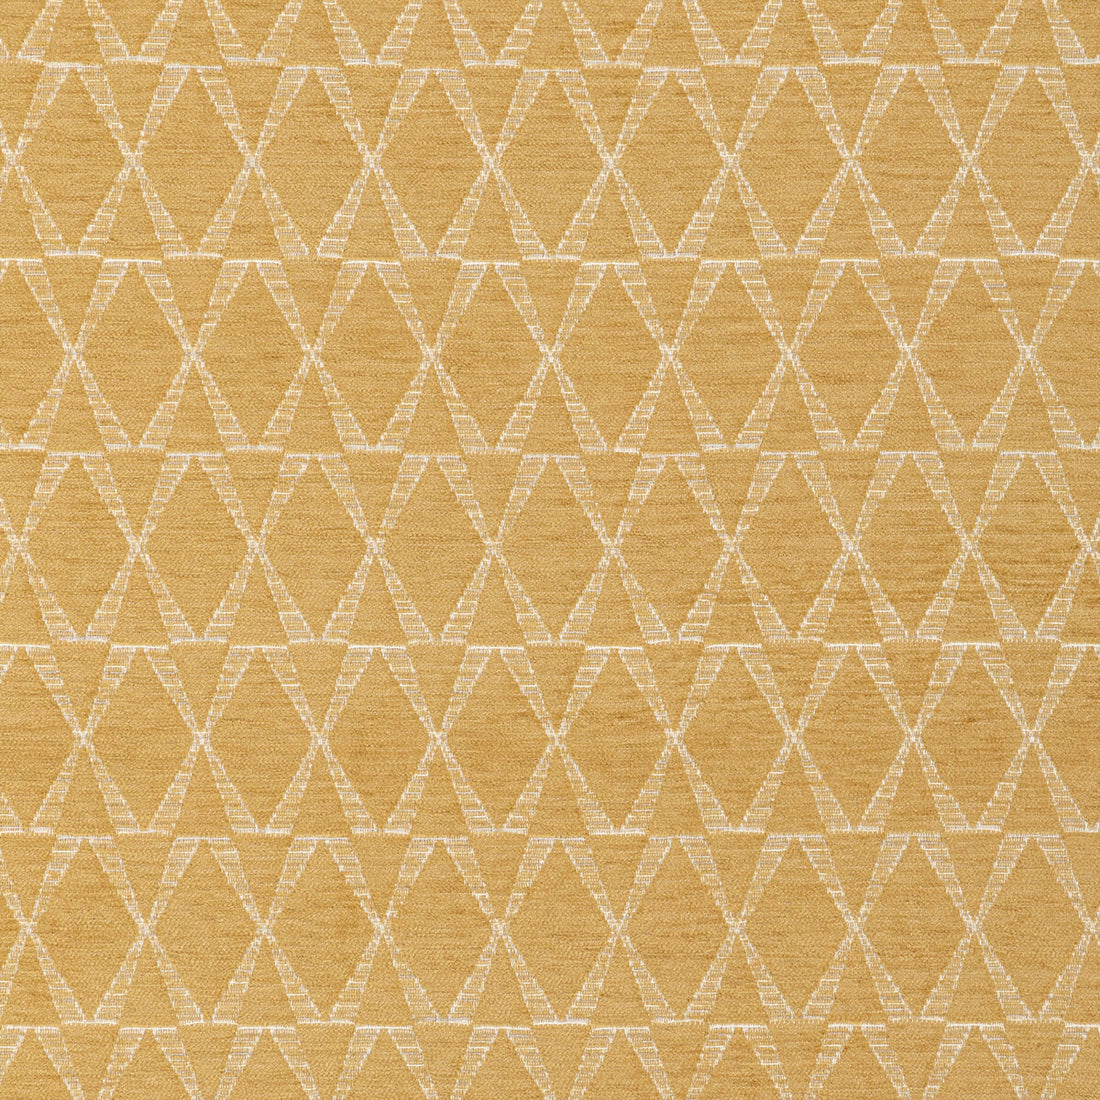 Kravet Design fabric in 36695-4 color - pattern 36695.4.0 - by Kravet Design